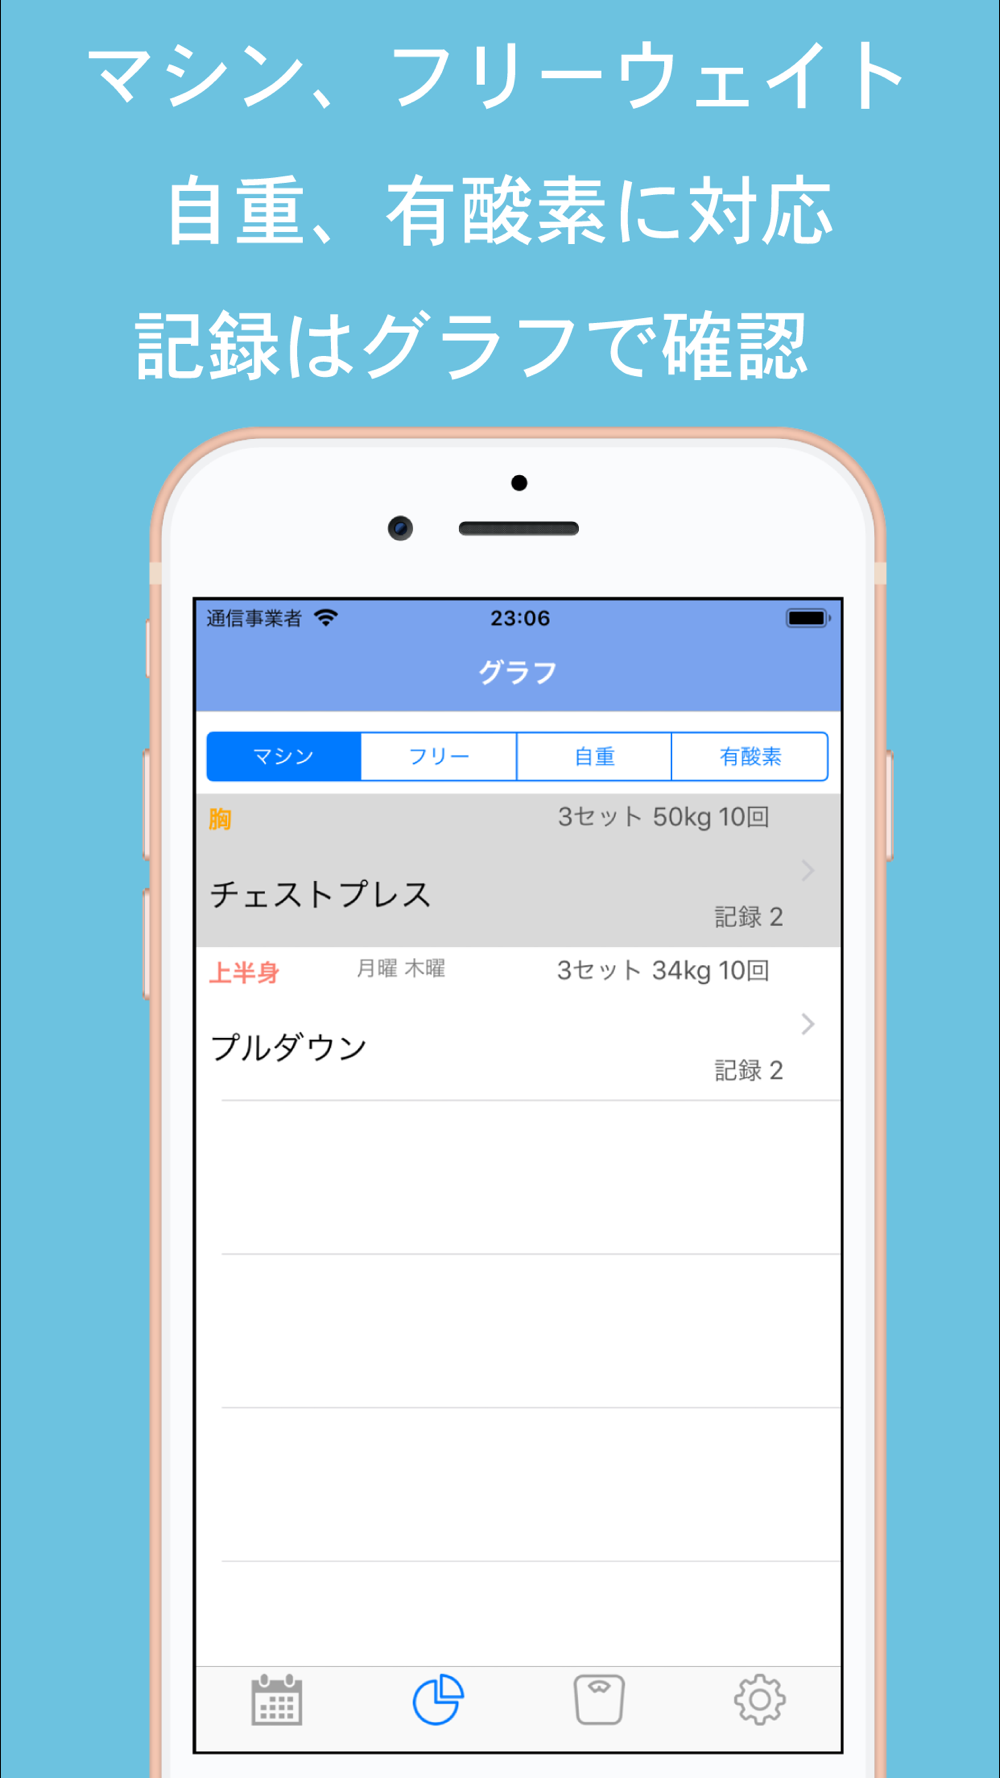 筋トレ カレンダー 女子も使うトレーニング 筋トレ記録アプリ Free Download App For Iphone Steprimo Com